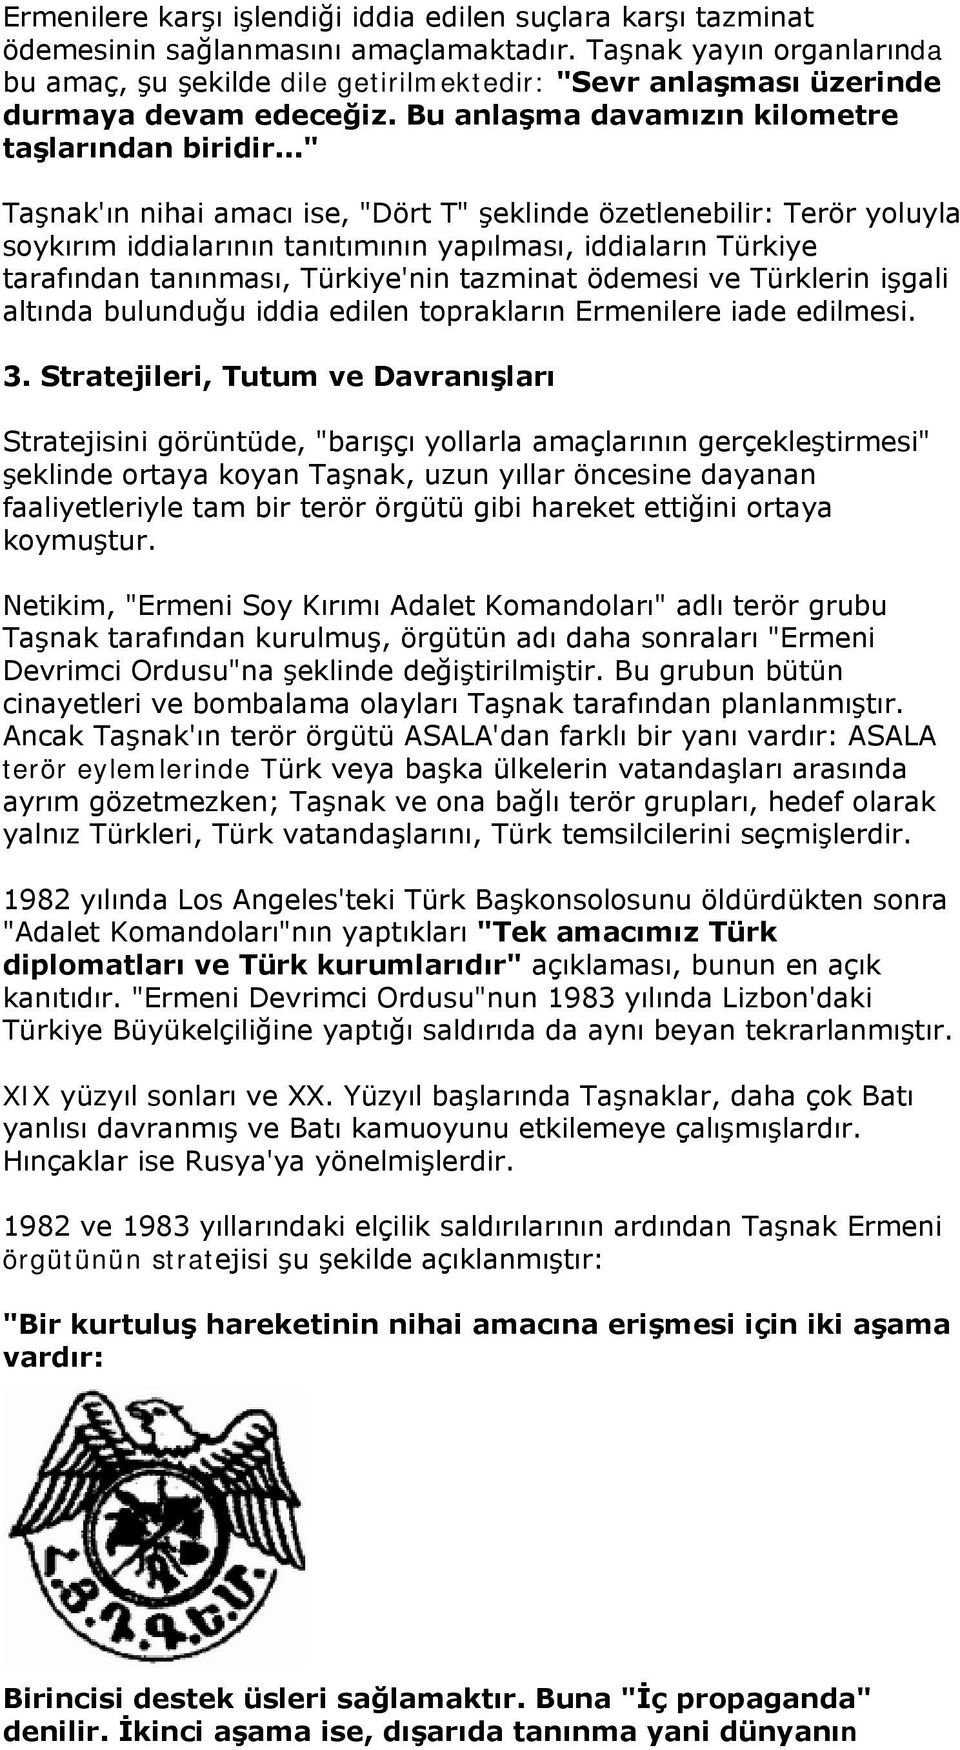 .." Taşnak'ın nihai amacı ise, "Dört T" şeklinde özetlenebilir: Terör yoluyla soykırım iddialarının tanıtımının yapılması, iddiaların Türkiye tarafından tanınması, Türkiye'nin tazminat ödemesi ve